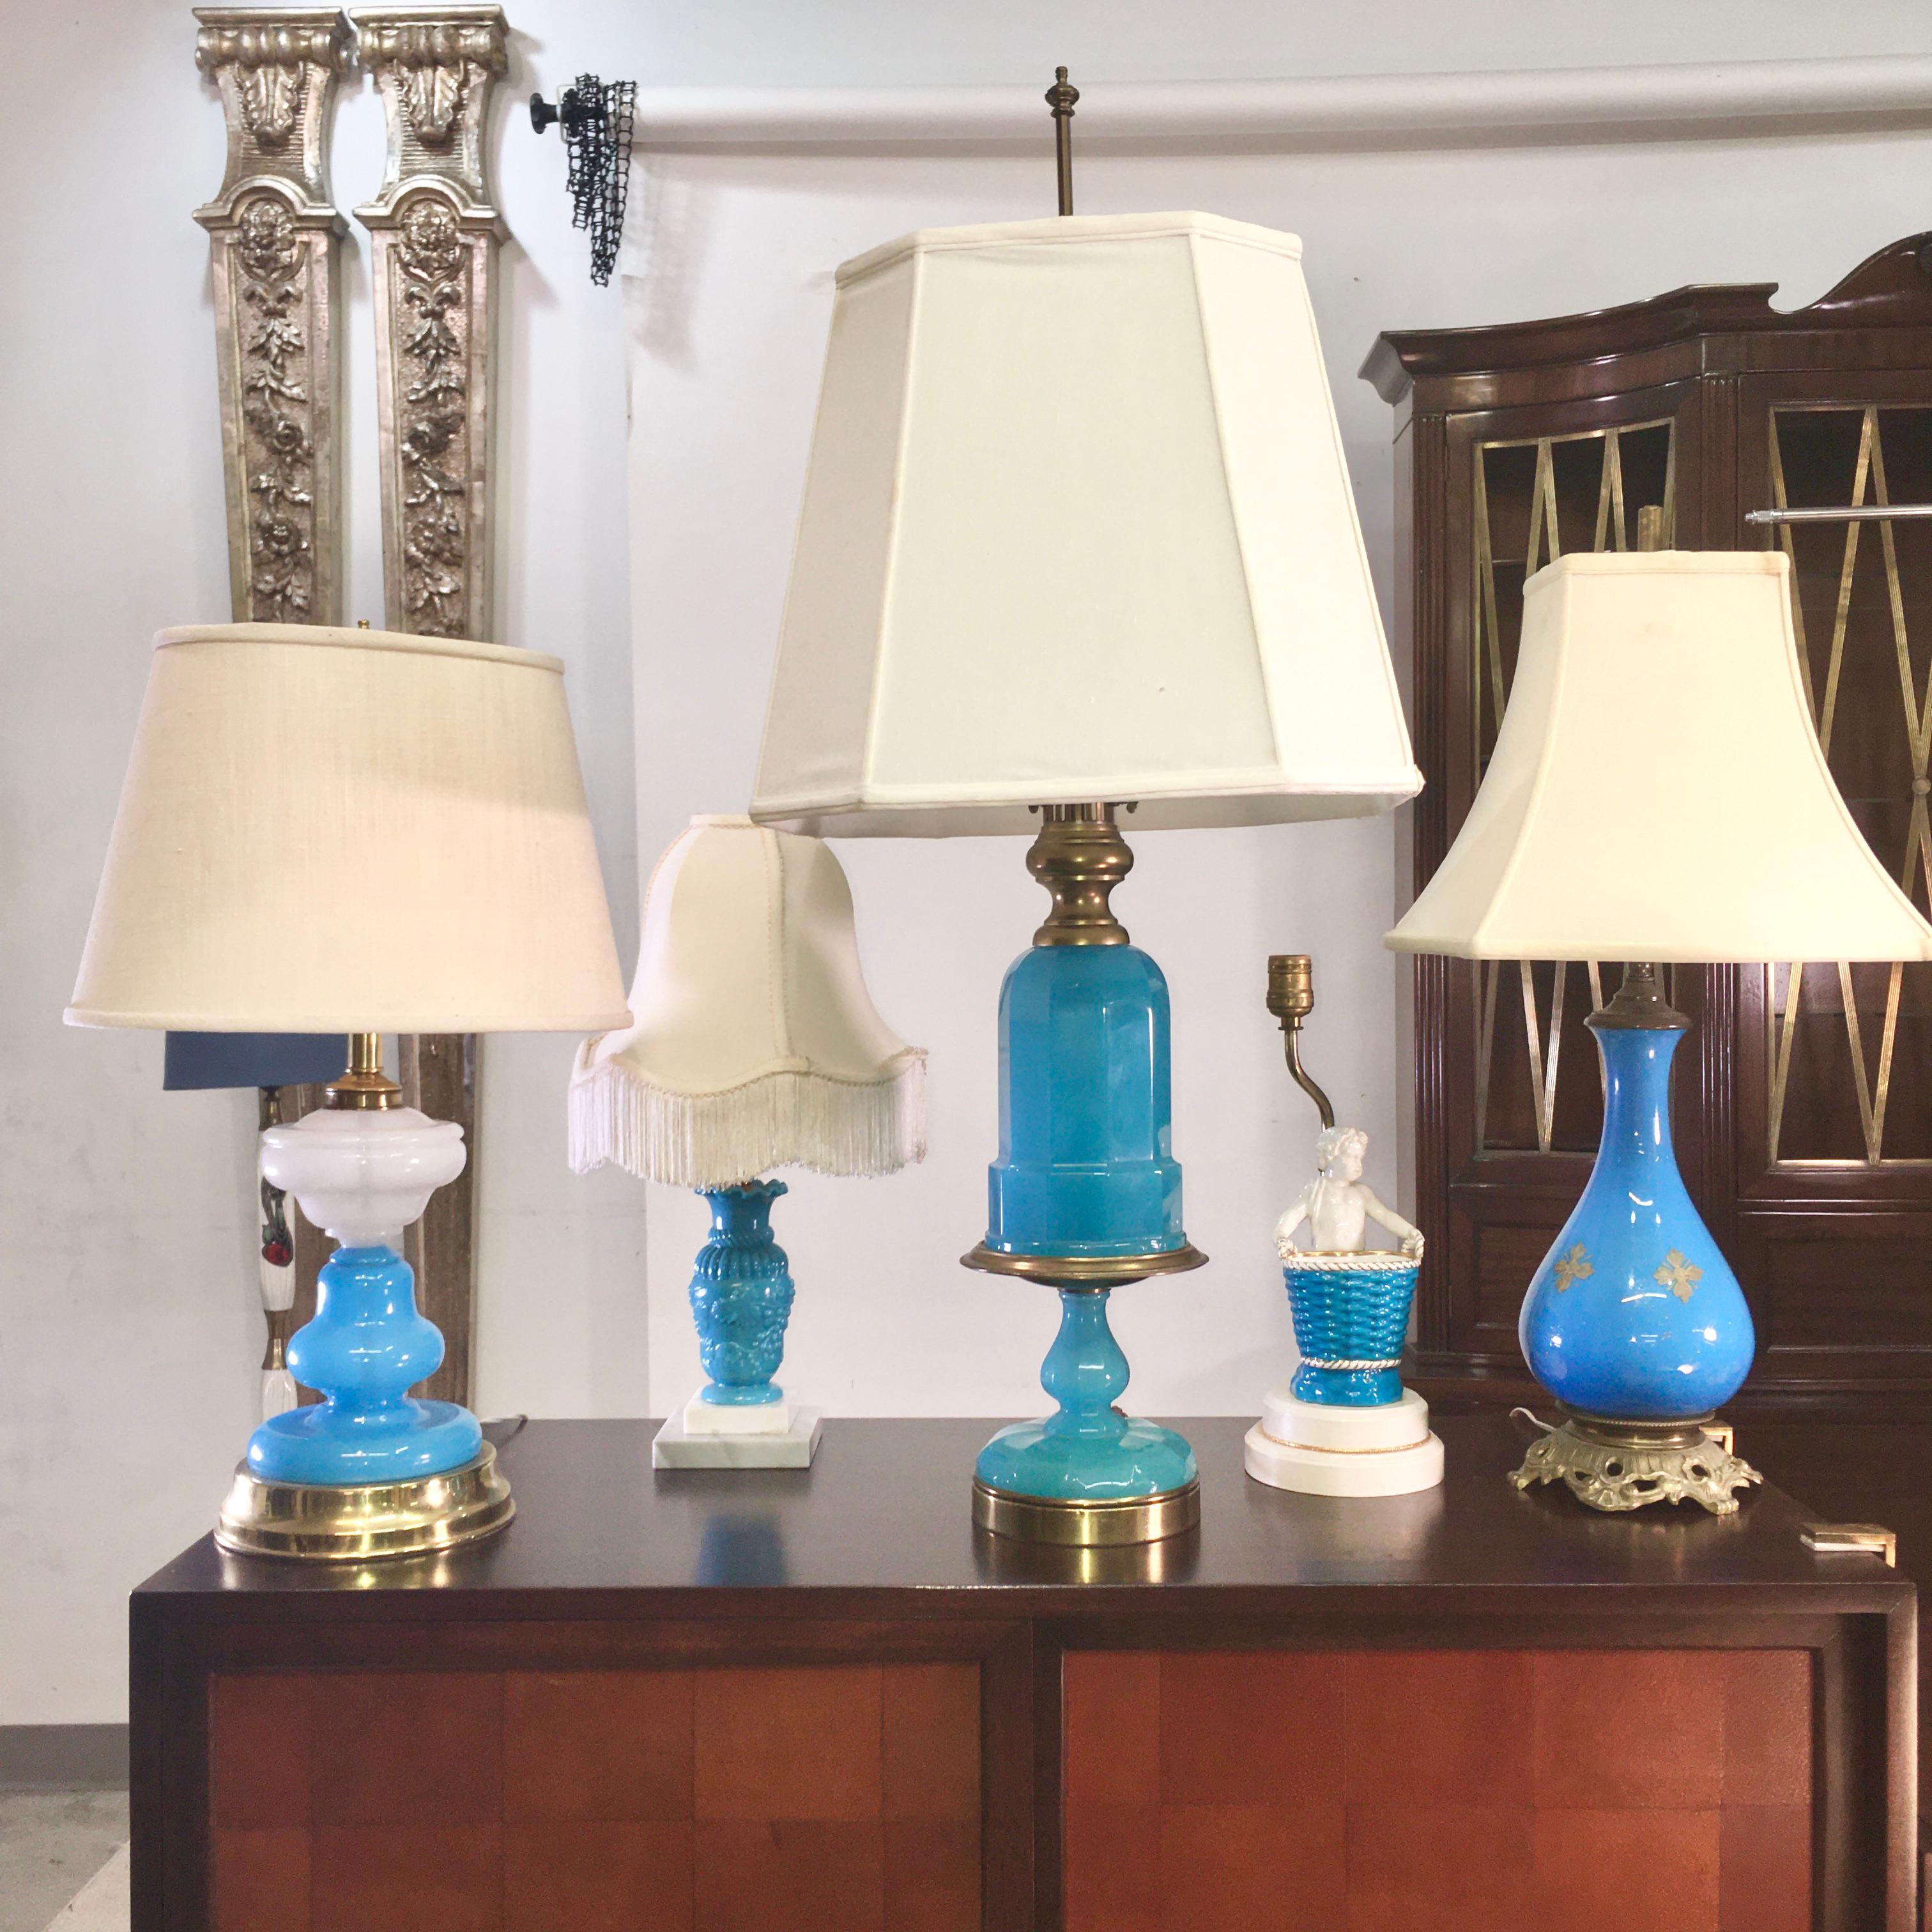 Groupe unique de cinq lampes du milieu du 20e siècle dans des tons complémentaires de bleu, dont la plus grande est une lampe en verre opalin Cenedese bleu turquoise montée sur laiton doré.
Tous ces objets proviennent de la succession de l'artiste